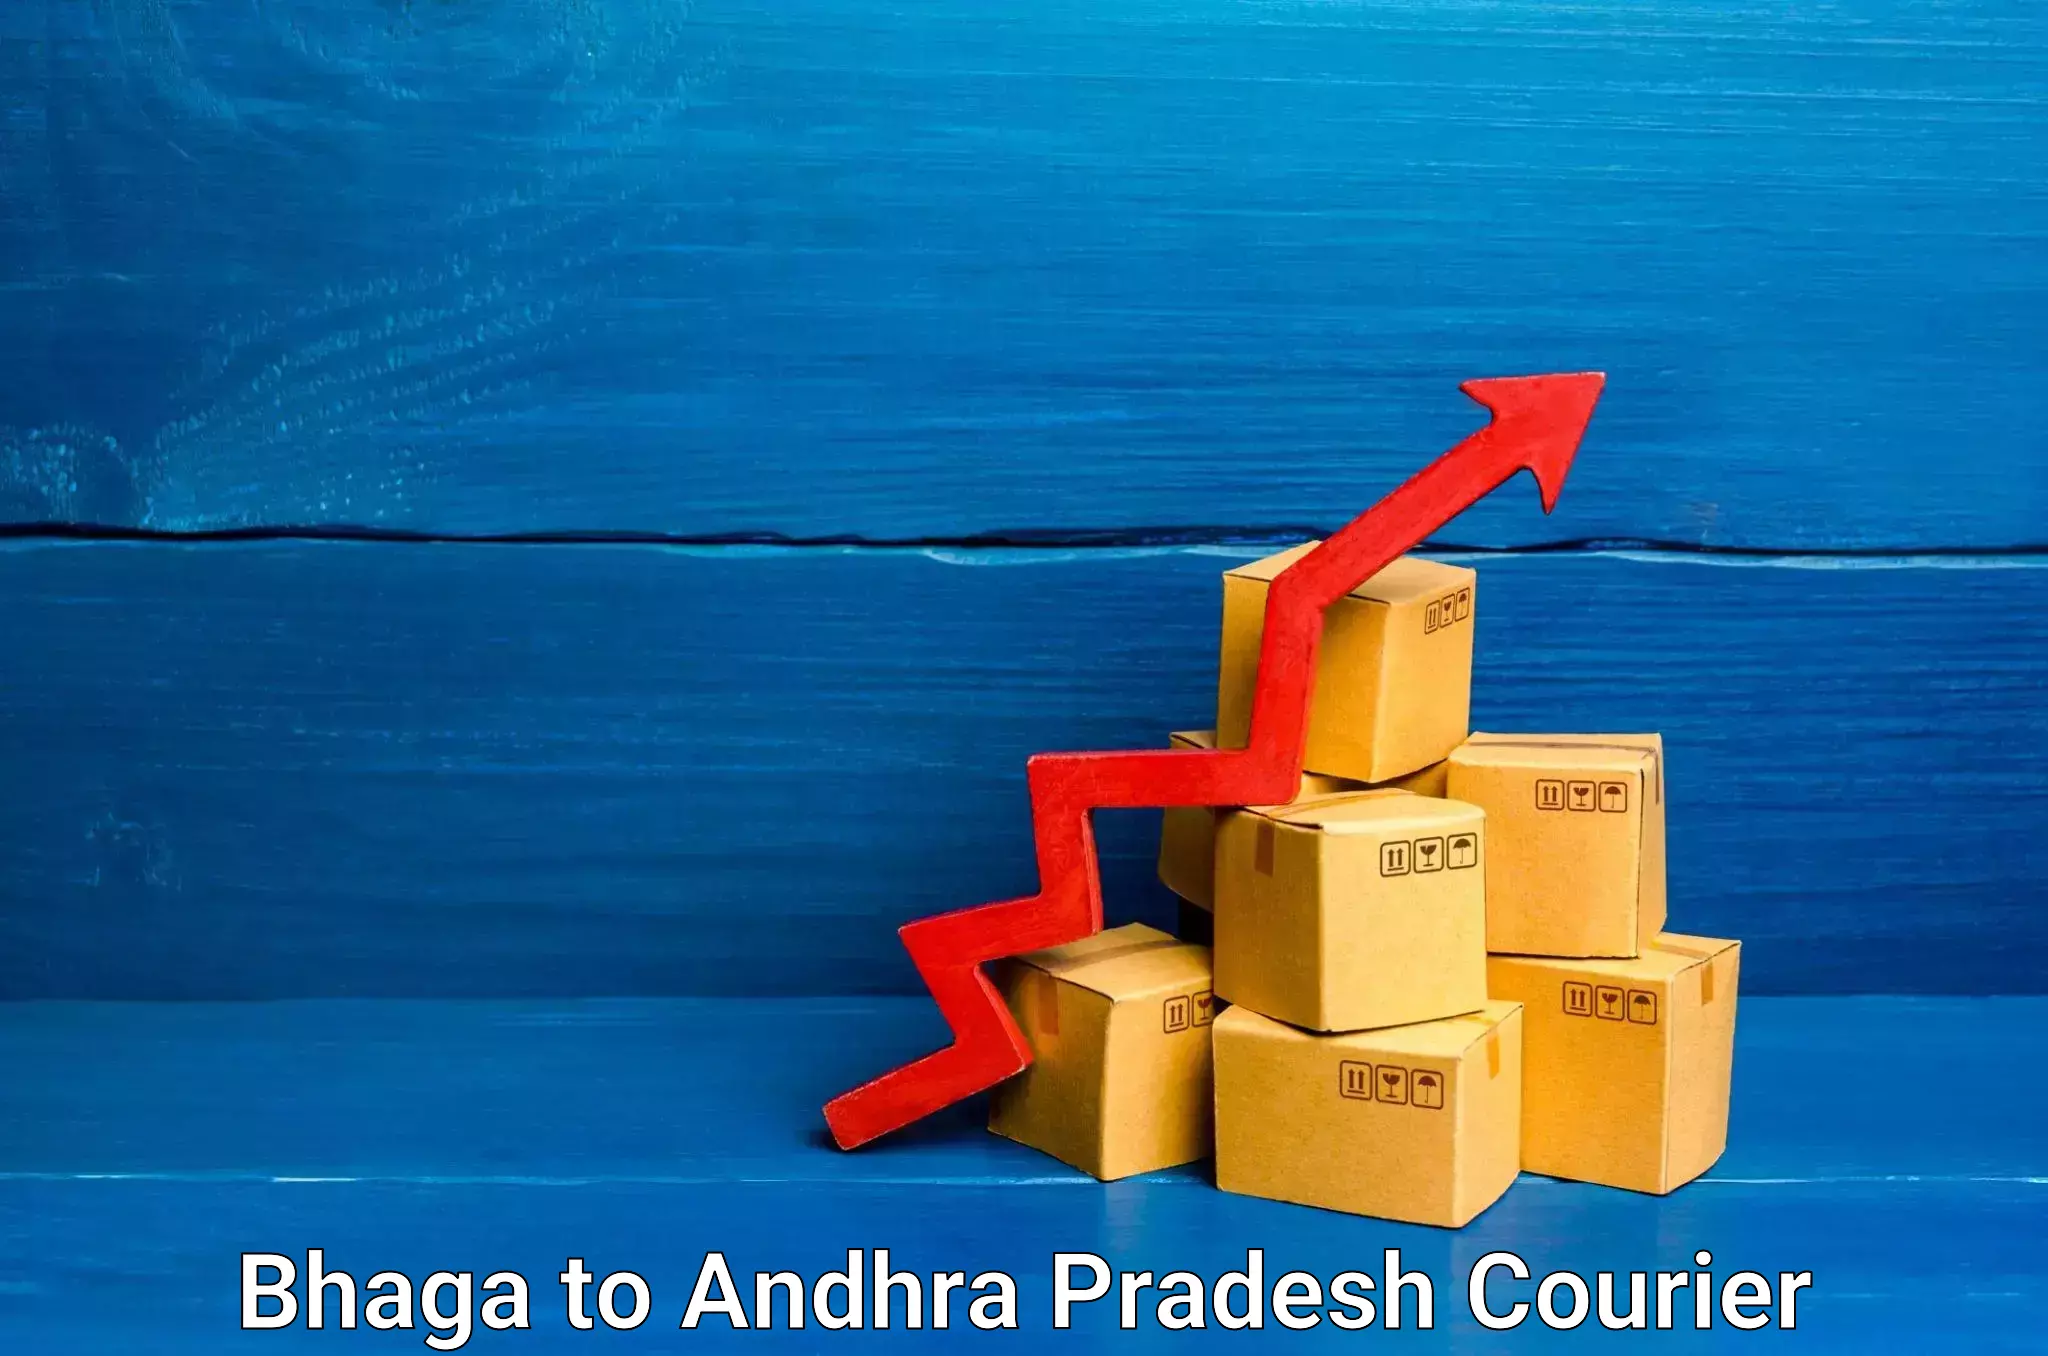 Courier service innovation Bhaga to Pedapadu